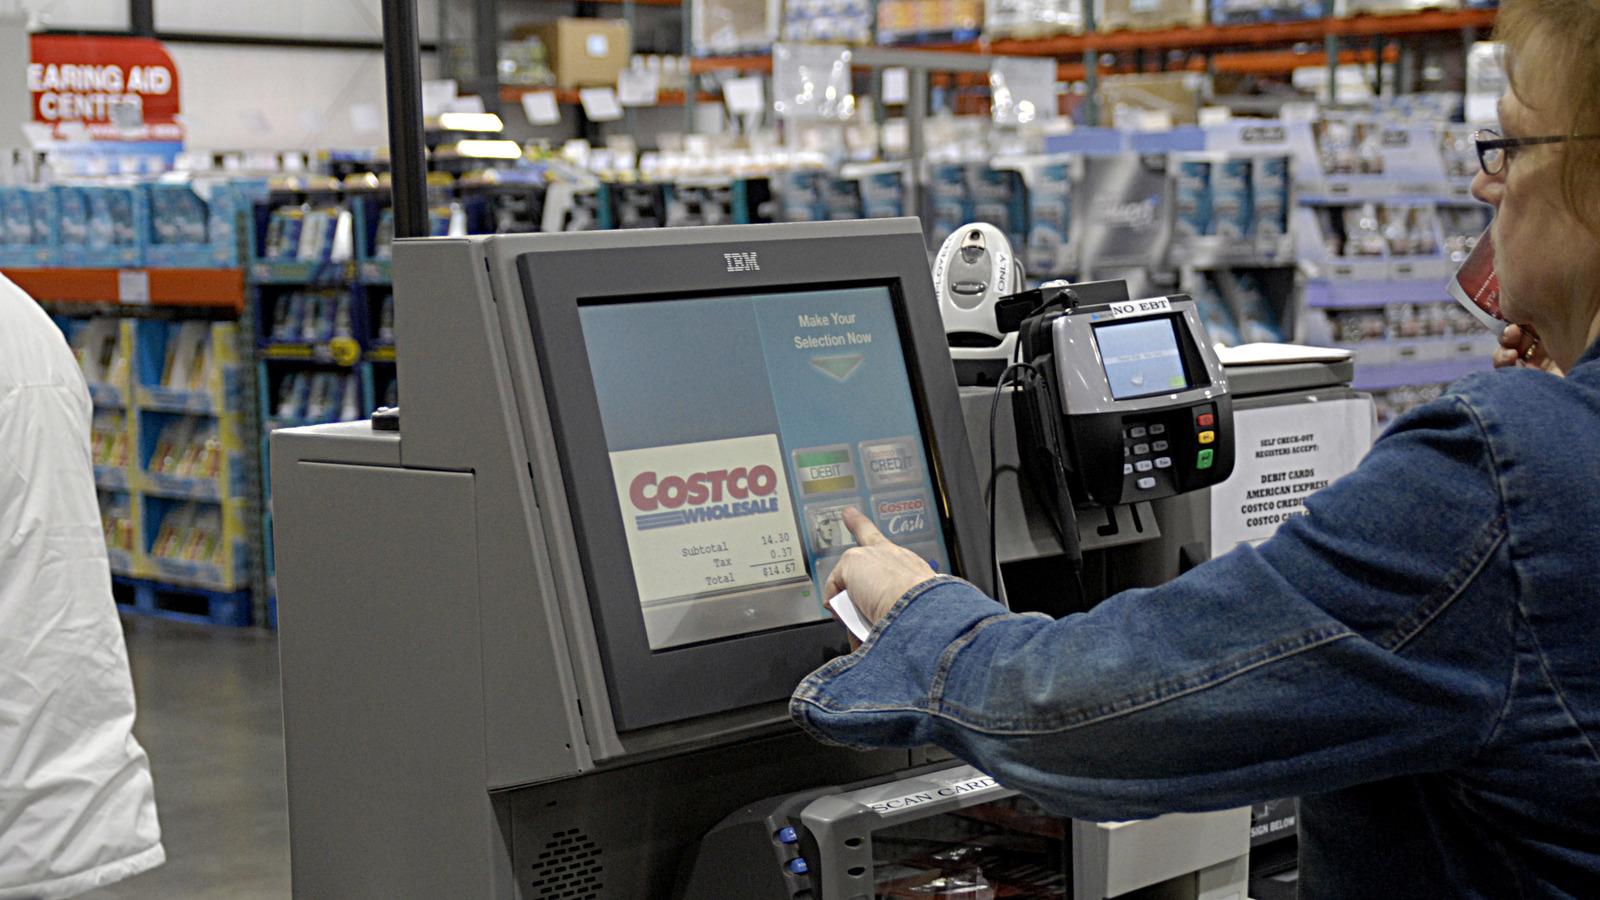 Действительно ли Costco прекращает членство из-за чрезмерной прибыли?